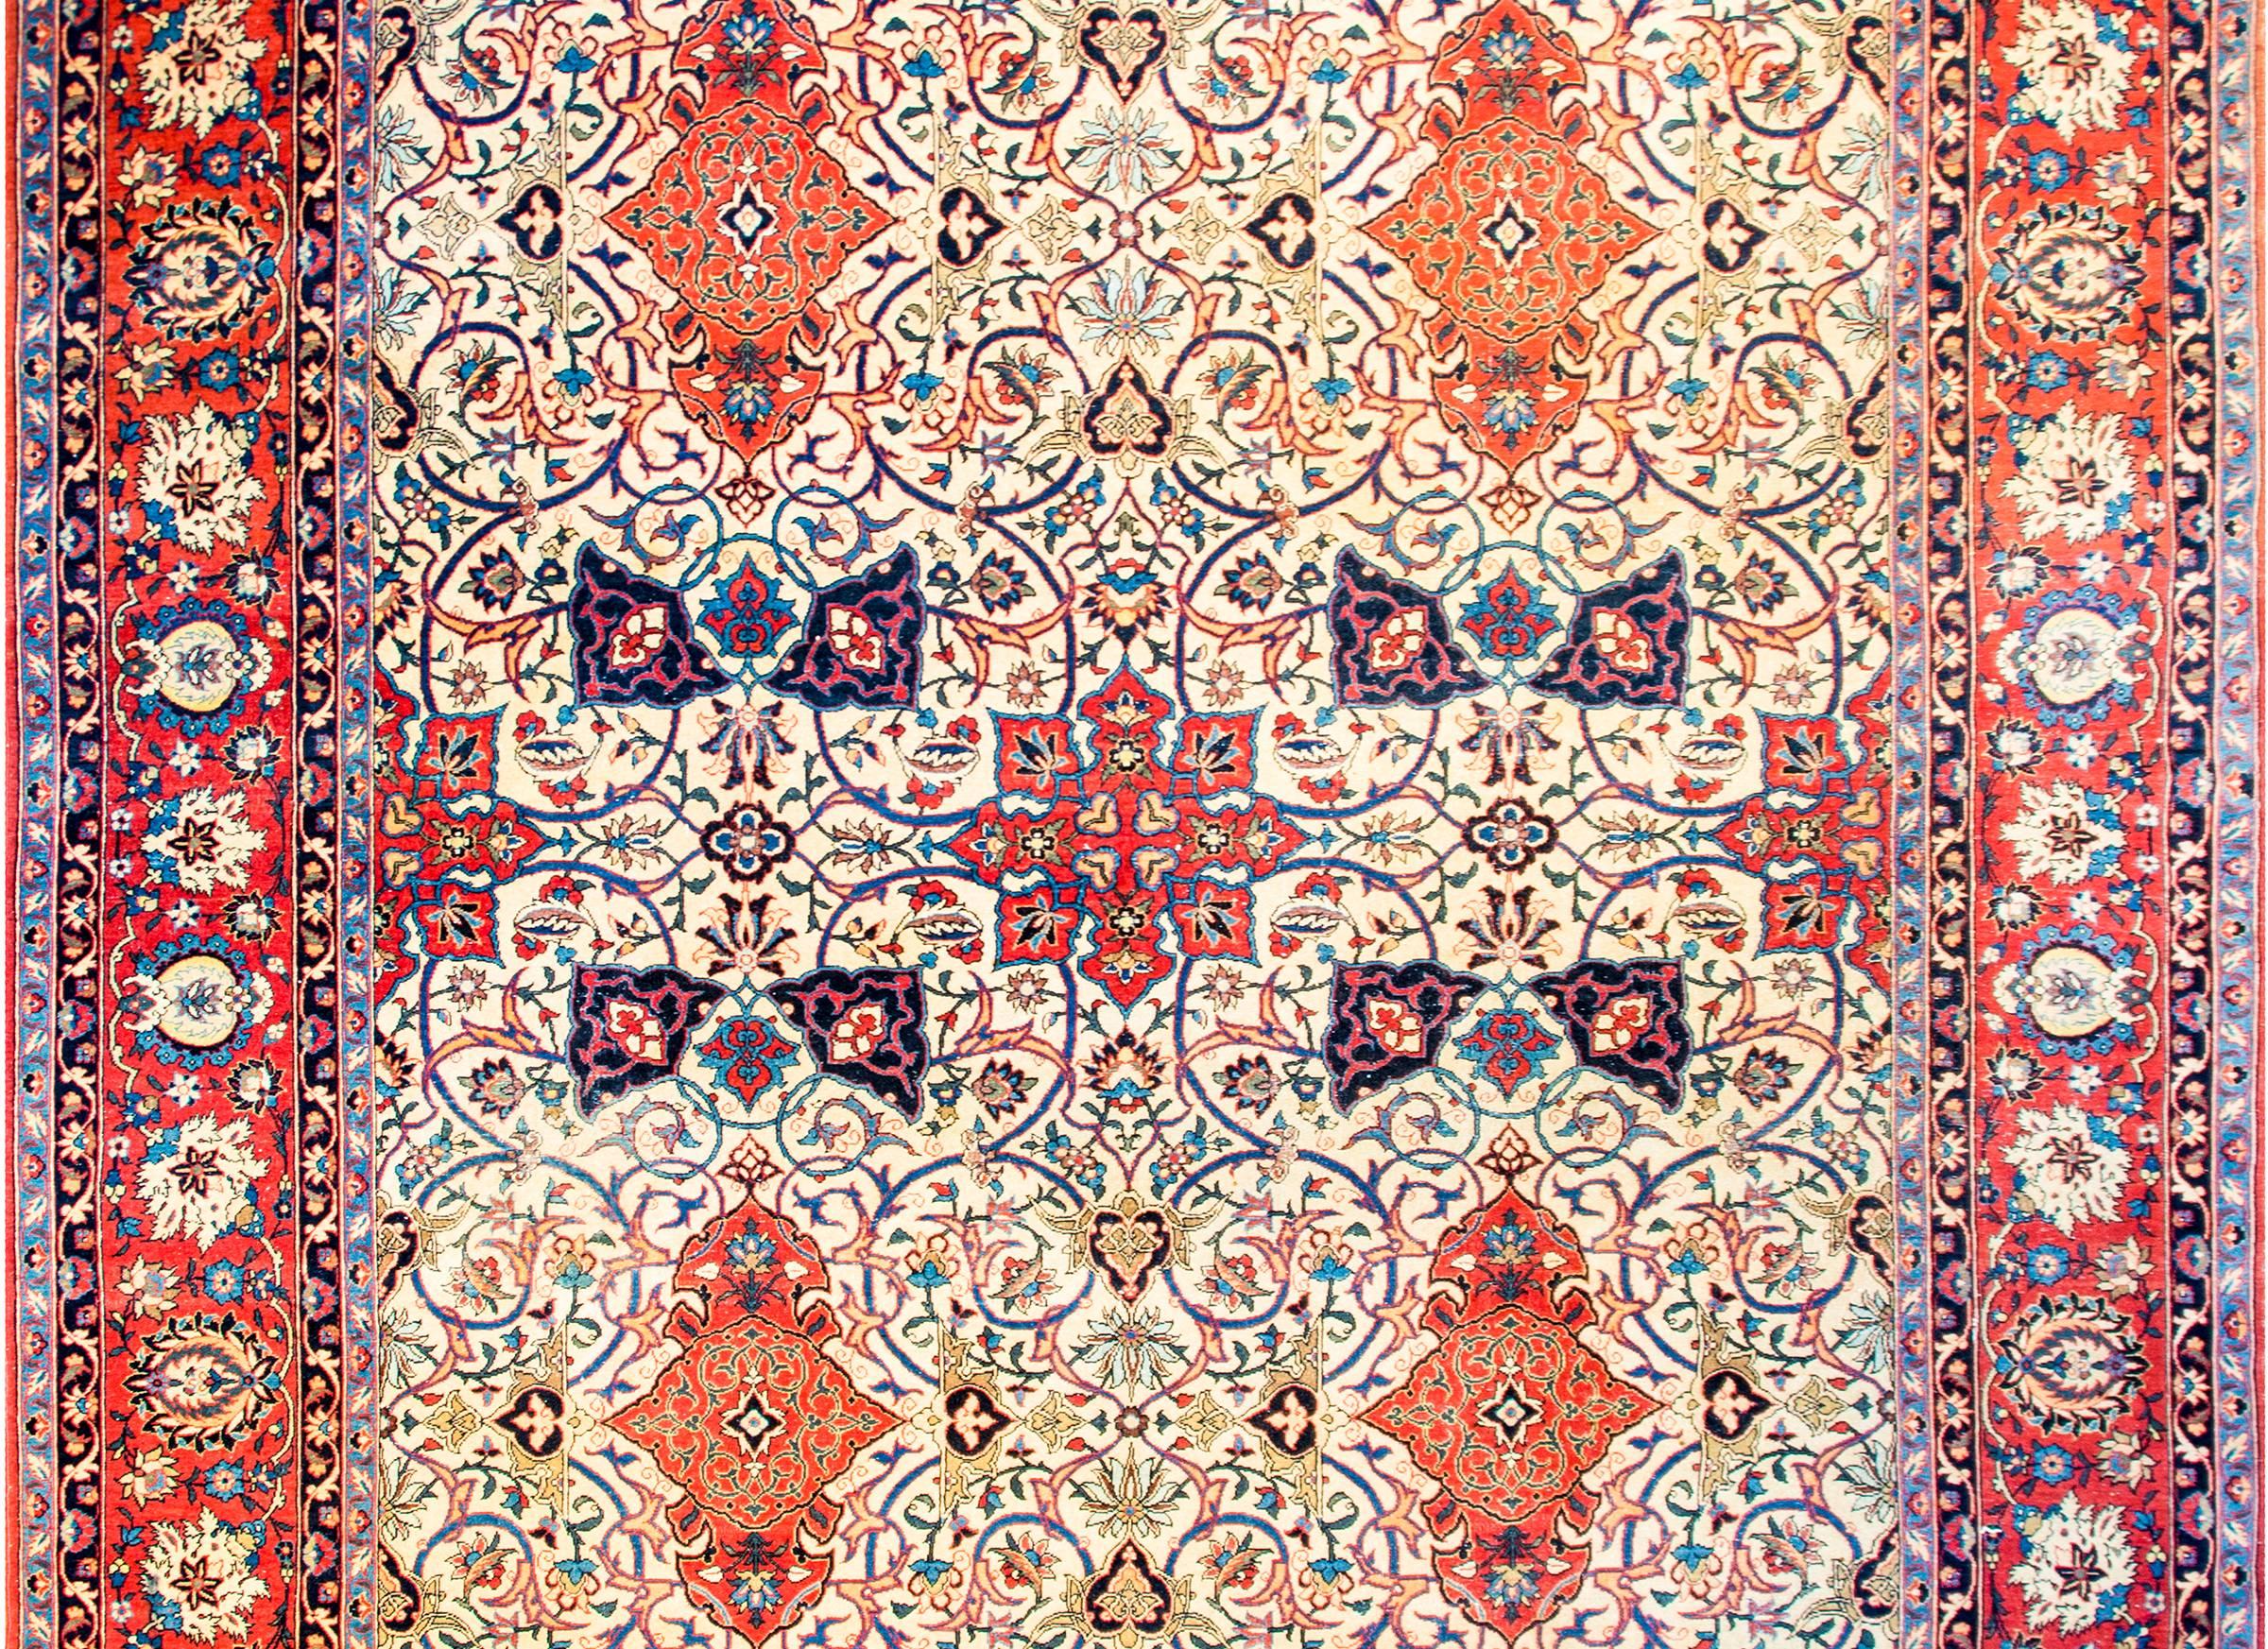 Ein faszinierender persischer Isfahan-Teppich aus dem frühen 20. Jahrhundert mit einem außerordentlich kunstvoll gewebten Muster aus vielfarbigen Blumen und Ranken, vierfach gespiegelt, auf einem naturfarbenen Wollgrund. Die Umrandung ist komplex